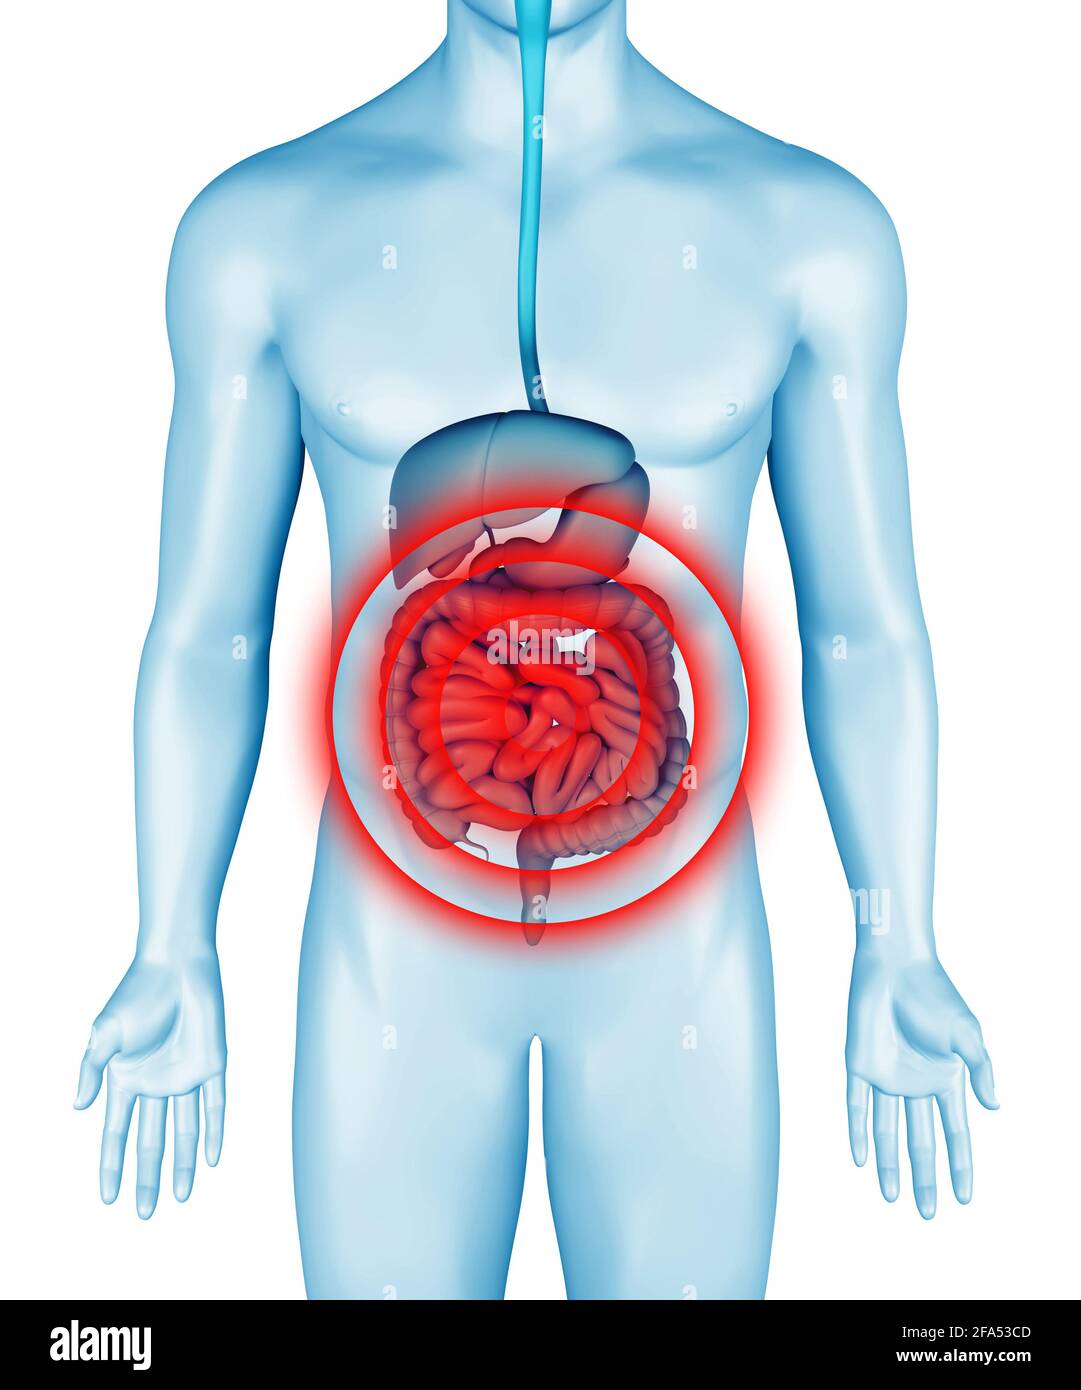 Darmschmerzen auf 3d-Darstellung des männlichen Körpers. Infografik zu Darmschmerzen im anatomischen Verdauungssystem. Bauch schmerzt Krankheit. 3d-Rendering. Stockfoto